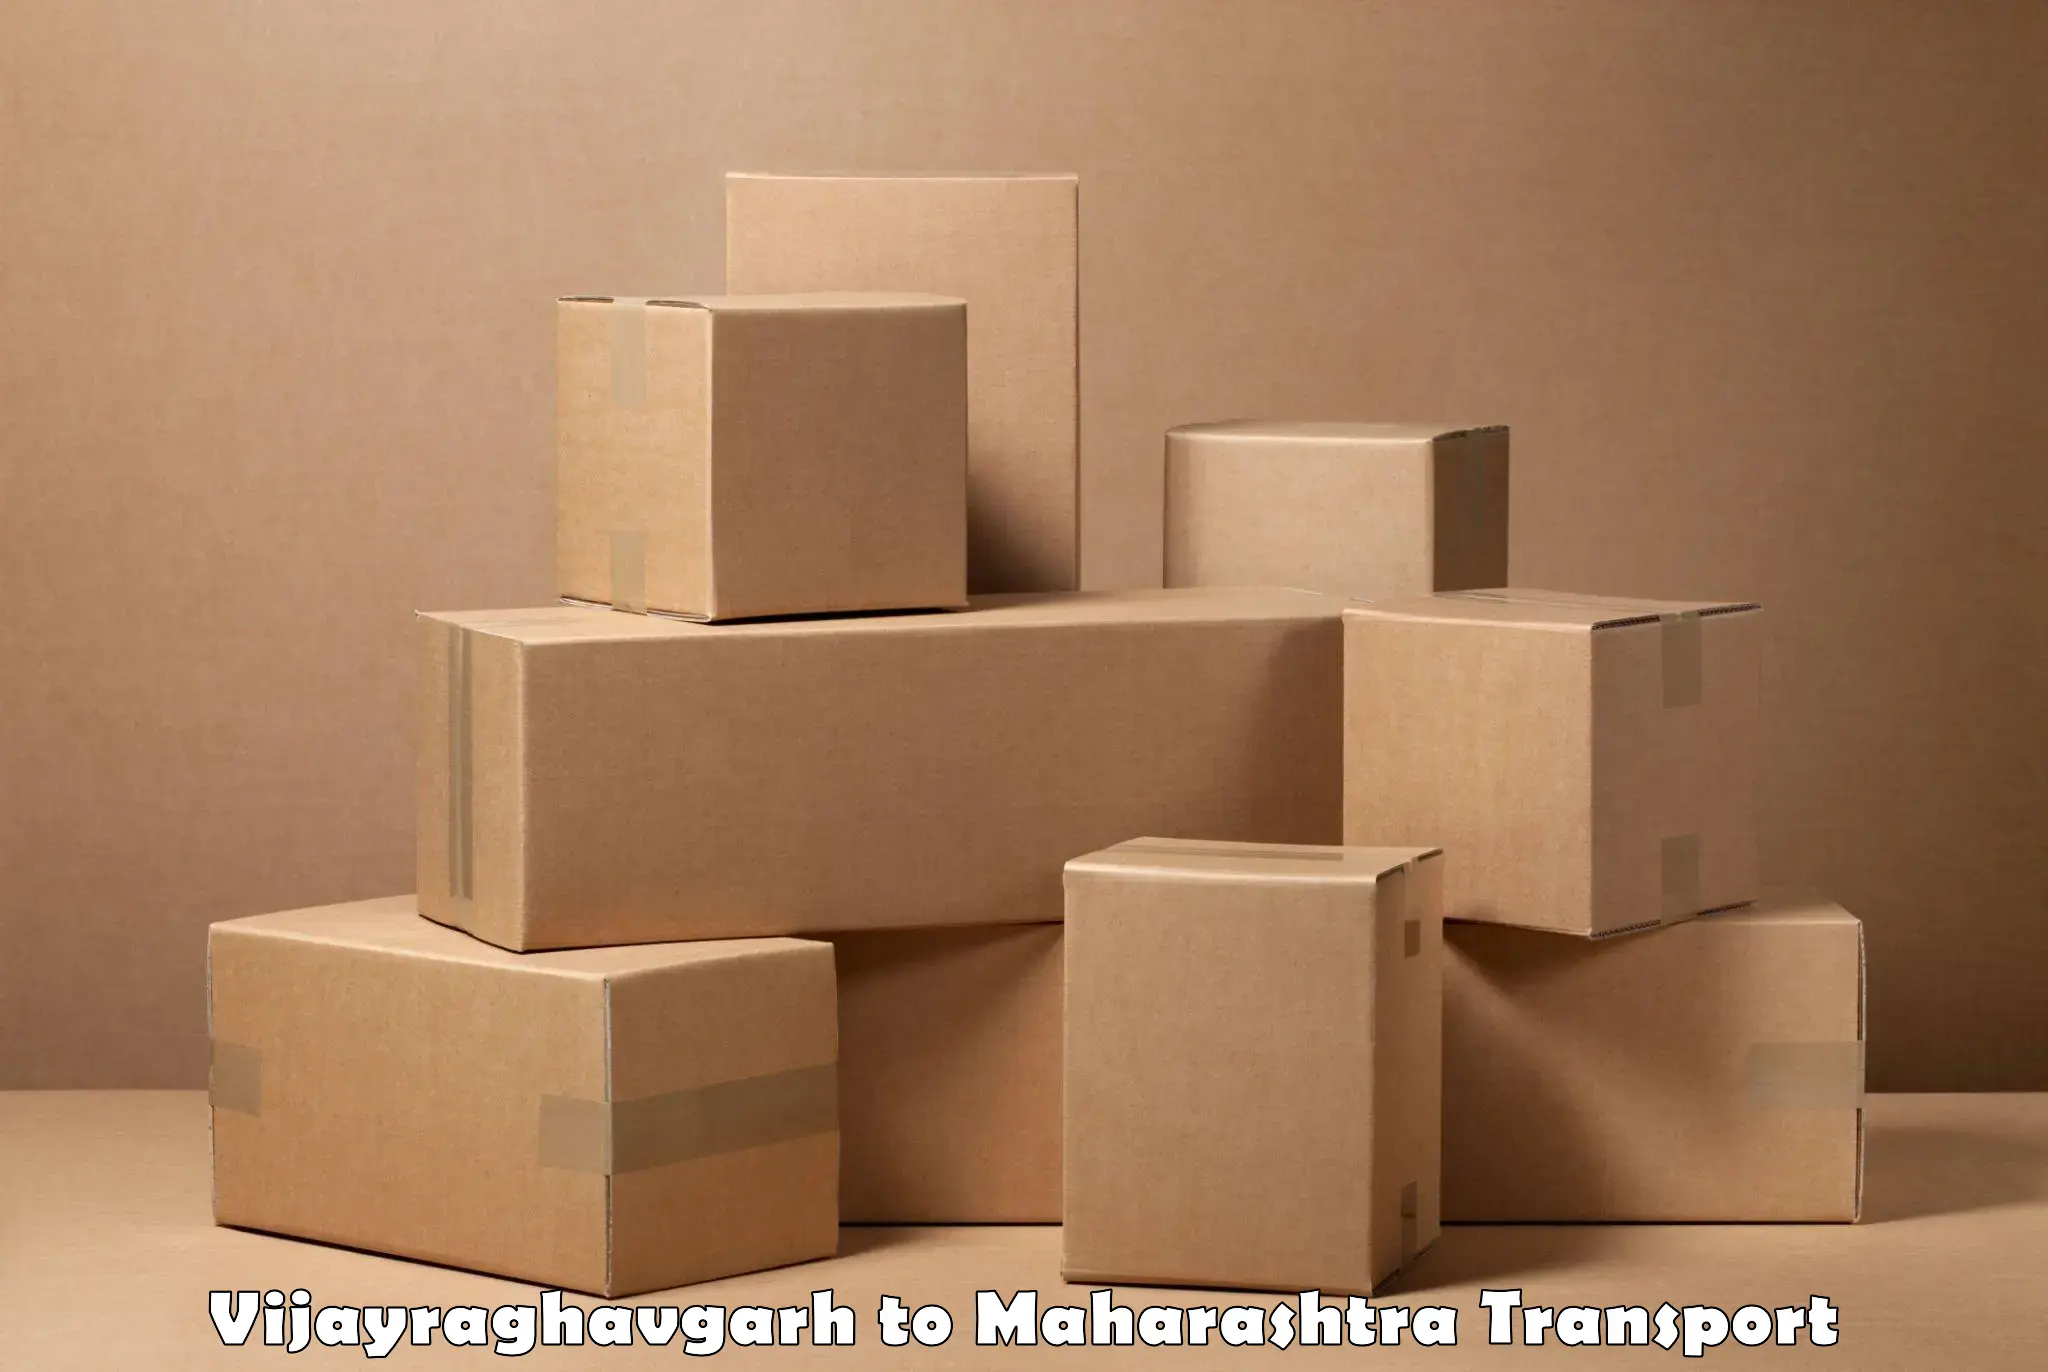 Commercial transport service Vijayraghavgarh to Shrigonda